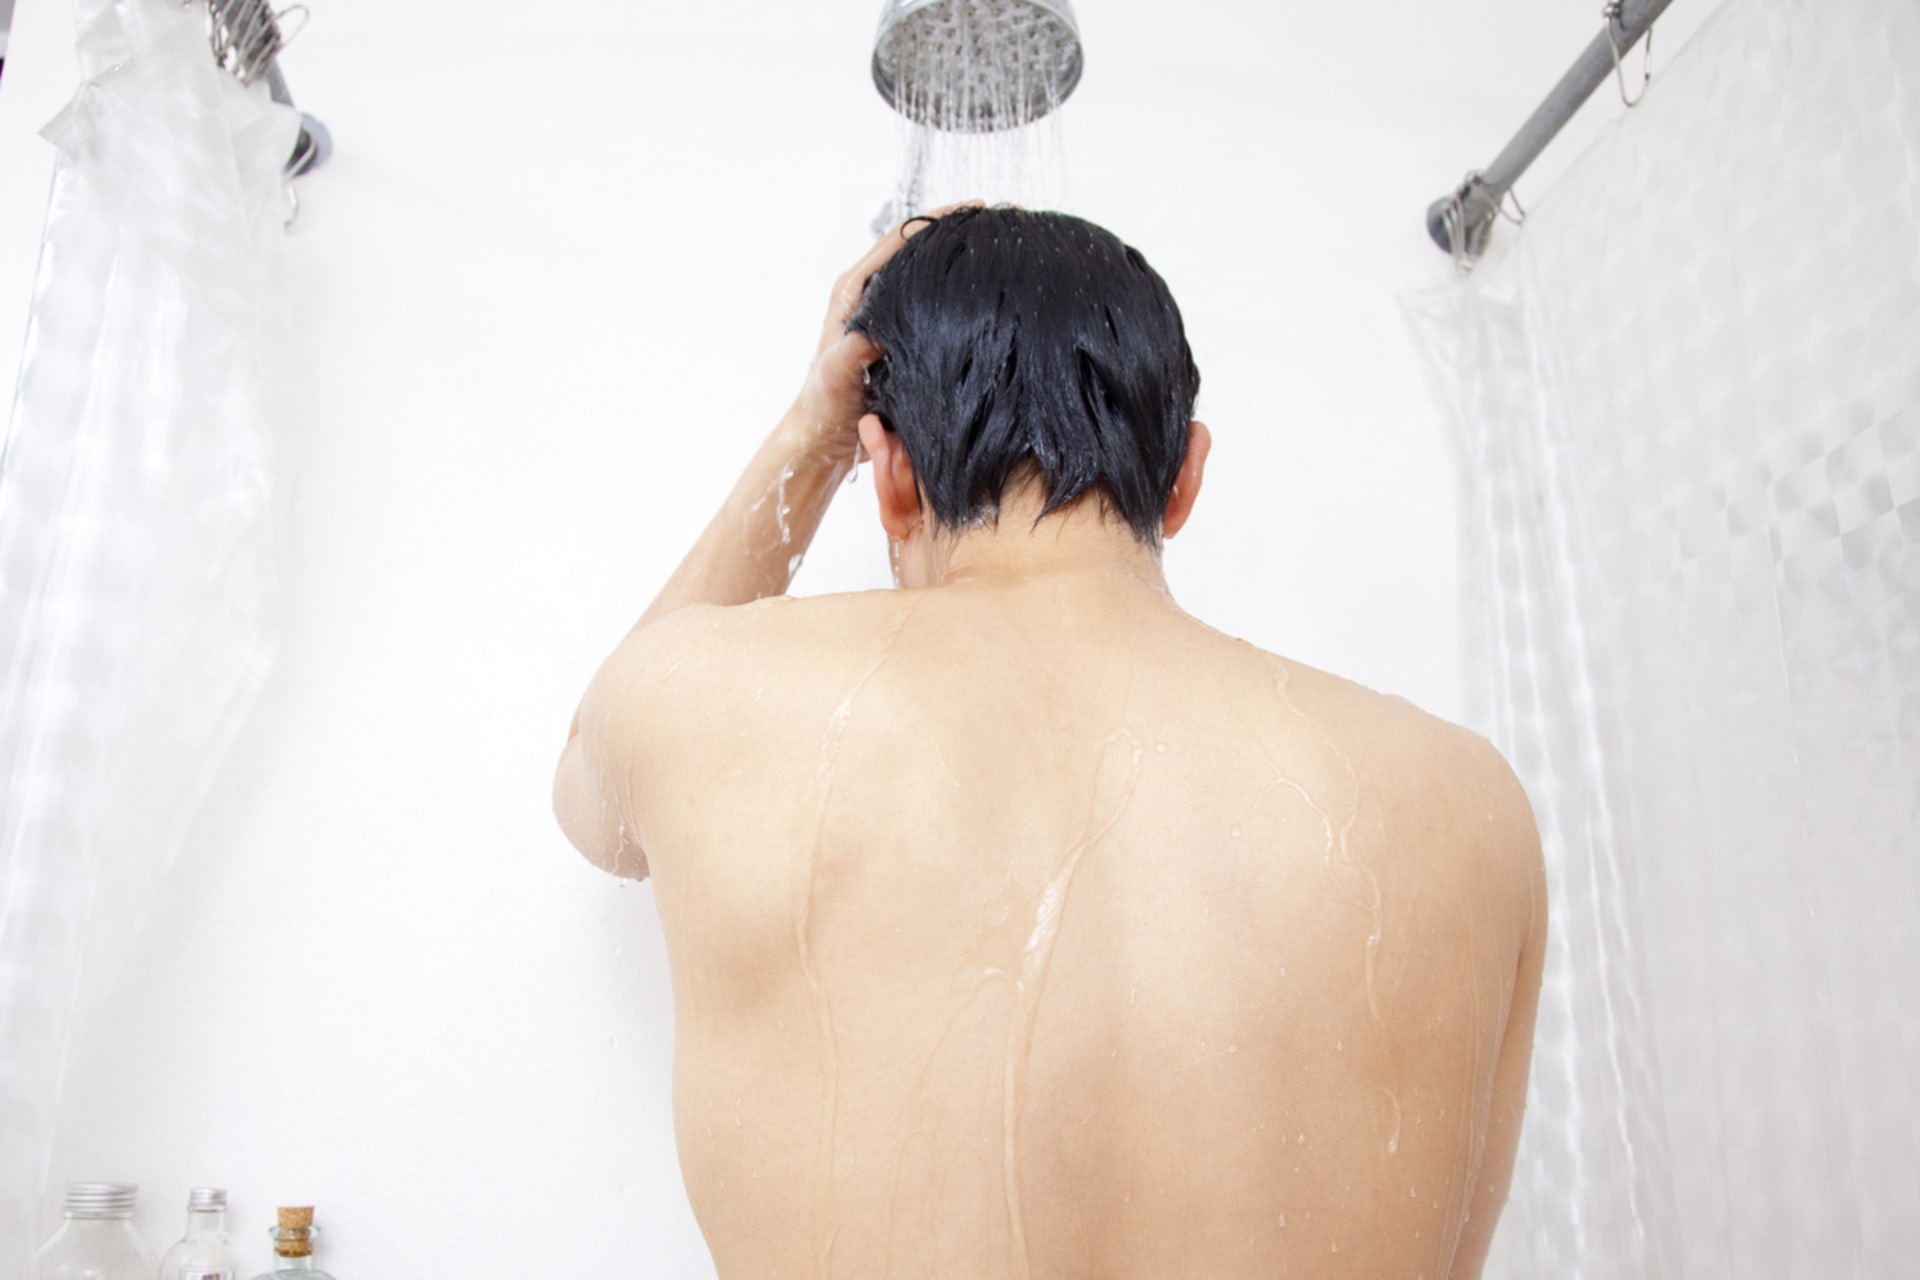 Muž ve sprše uklouznul a skončil se sprchovou hlavicí v zadku... prý